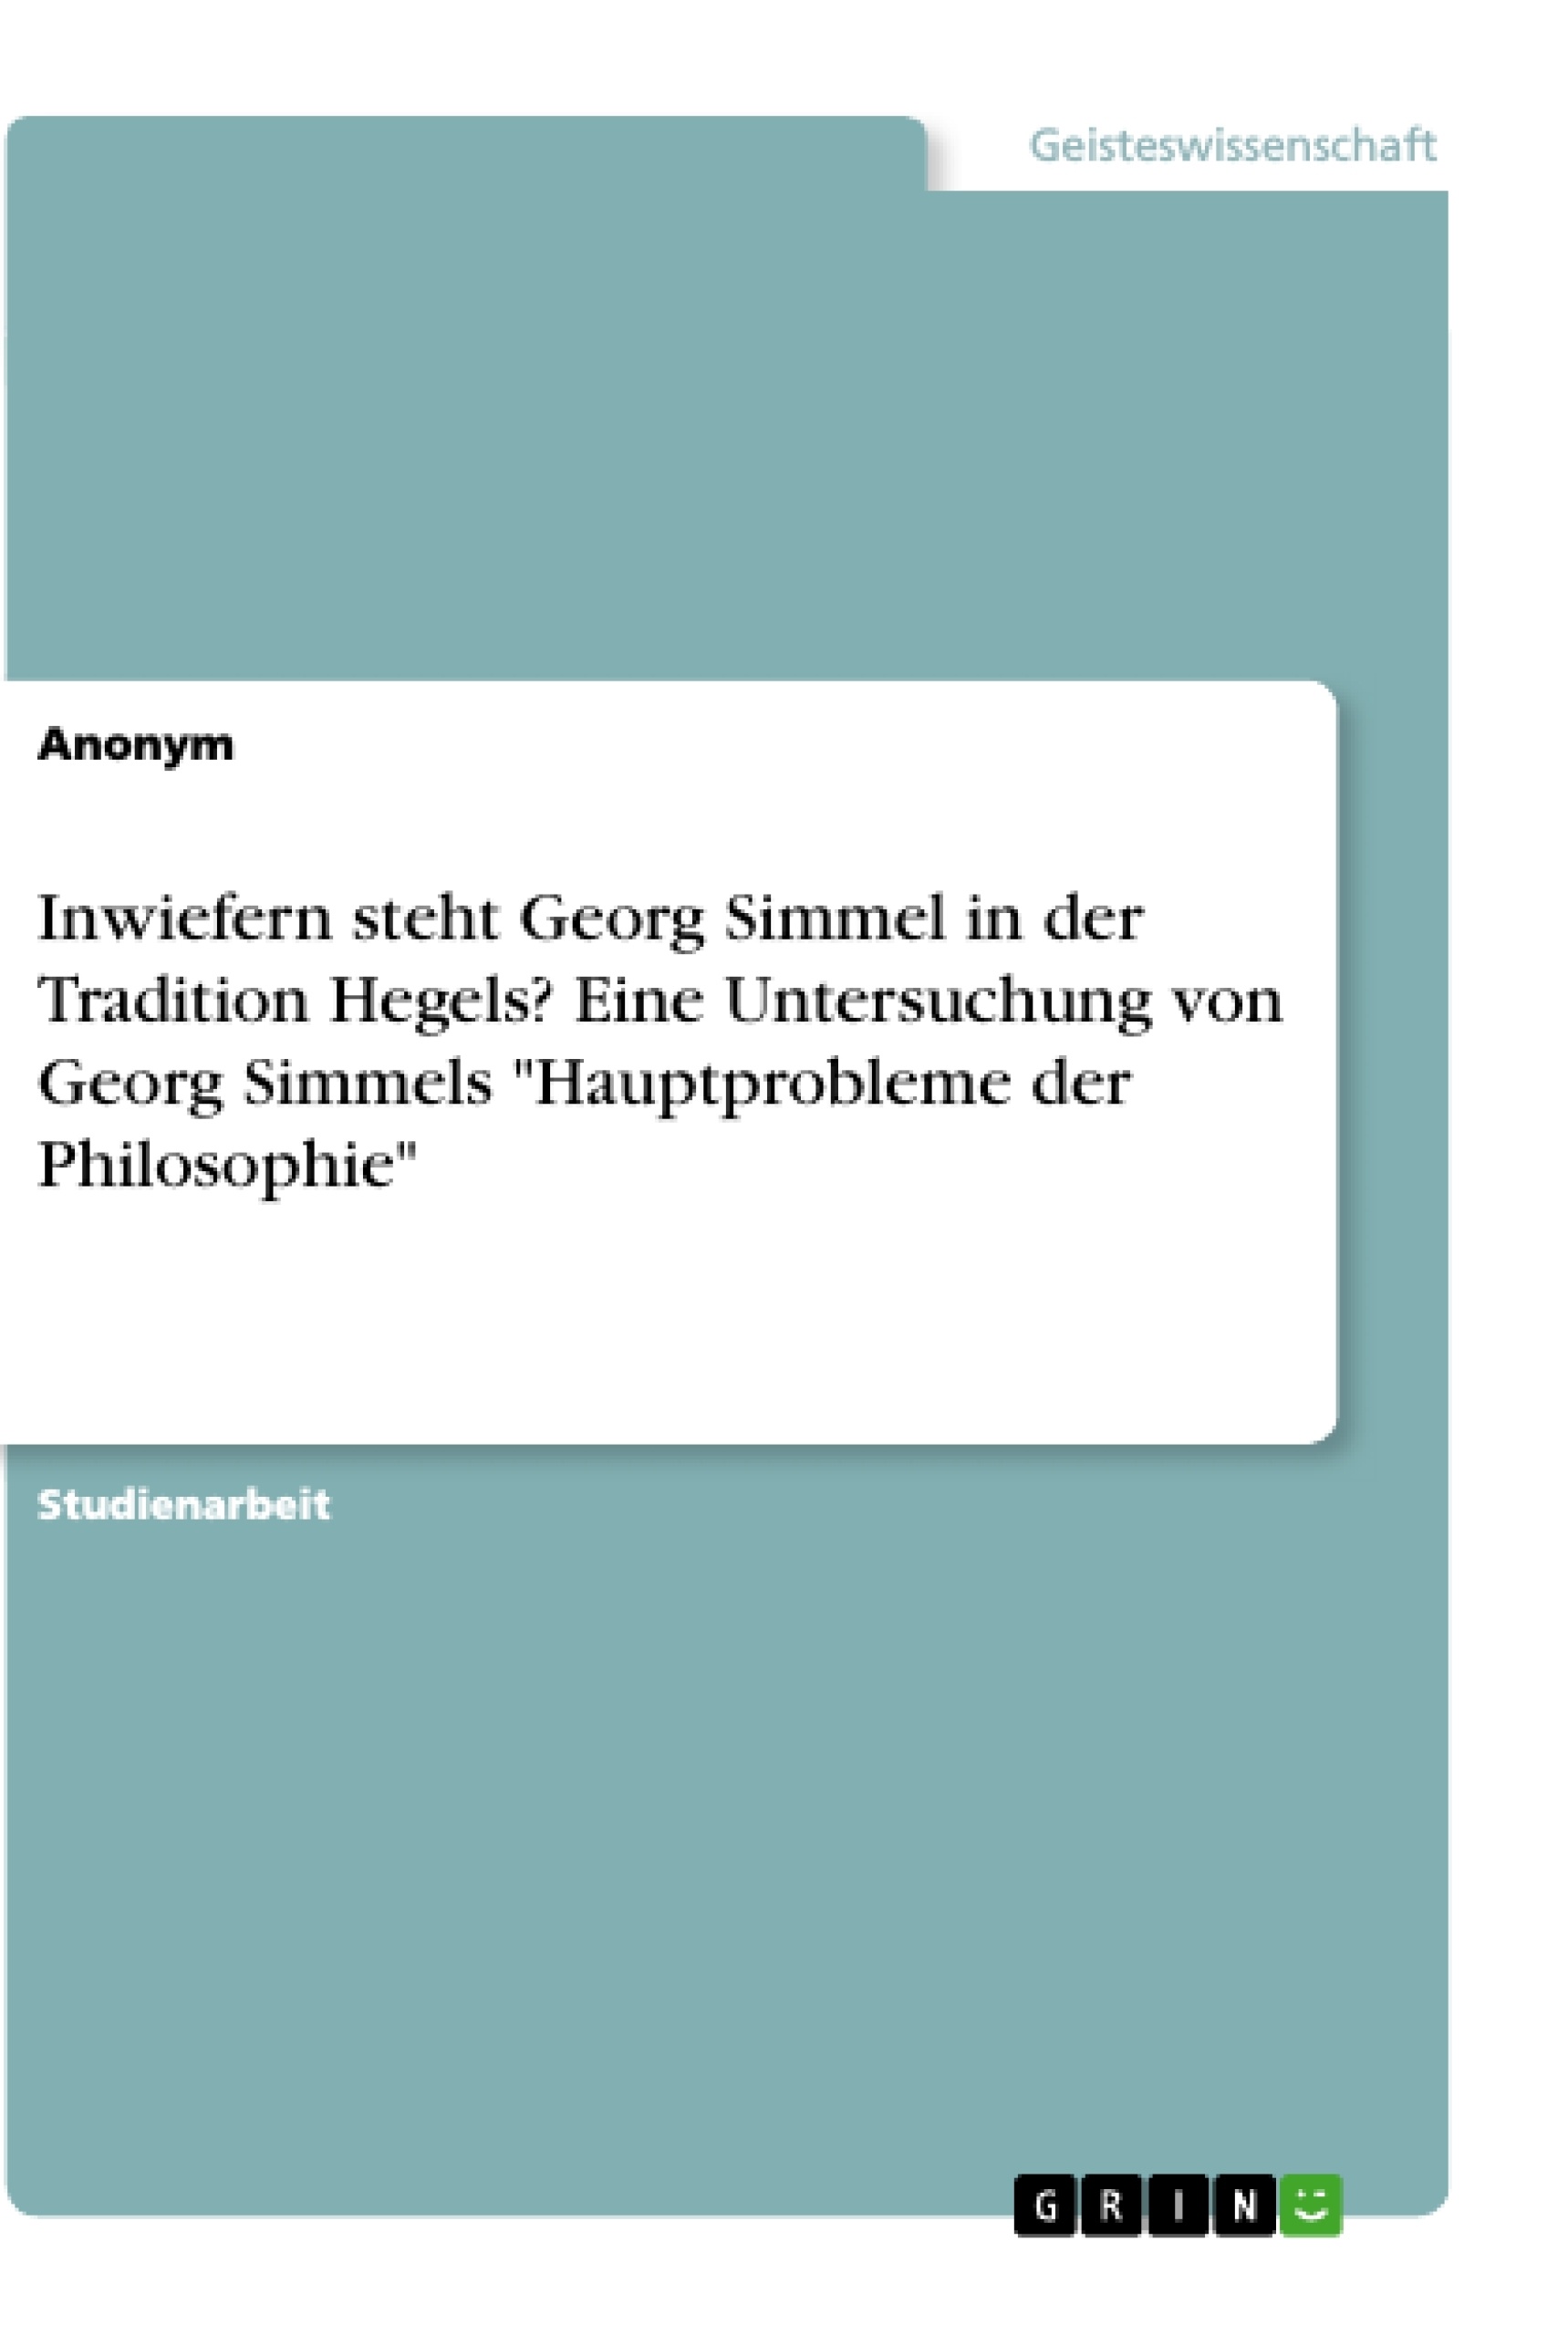 Titel: Inwiefern steht Georg Simmel in der Tradition Hegels? Eine Untersuchung von Georg Simmels "Hauptprobleme der Philosophie"